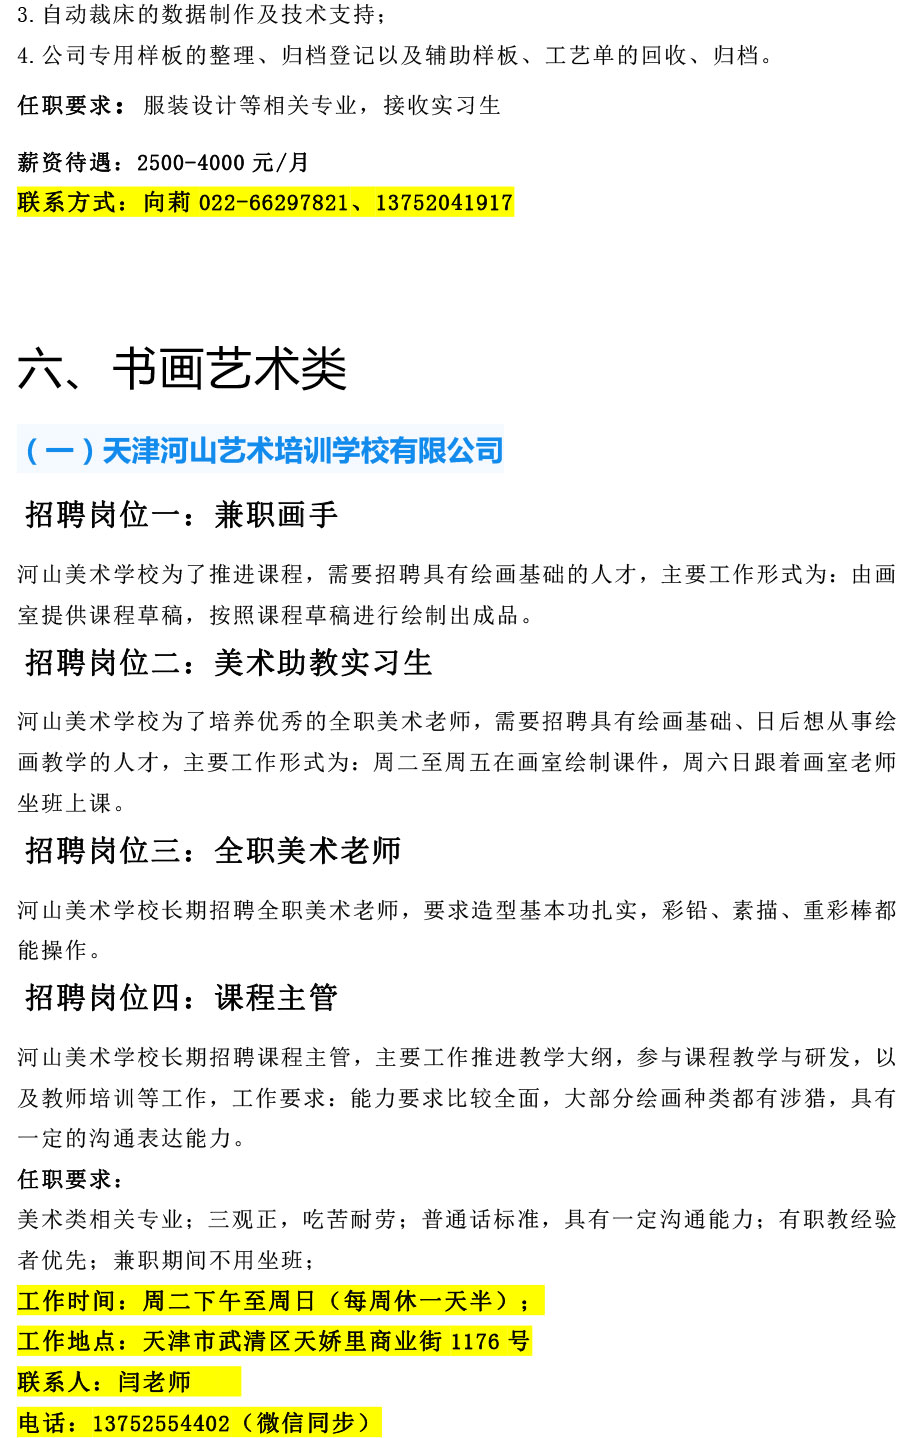 天津工艺美术职业学院2021年12月招聘信息-8.jpg